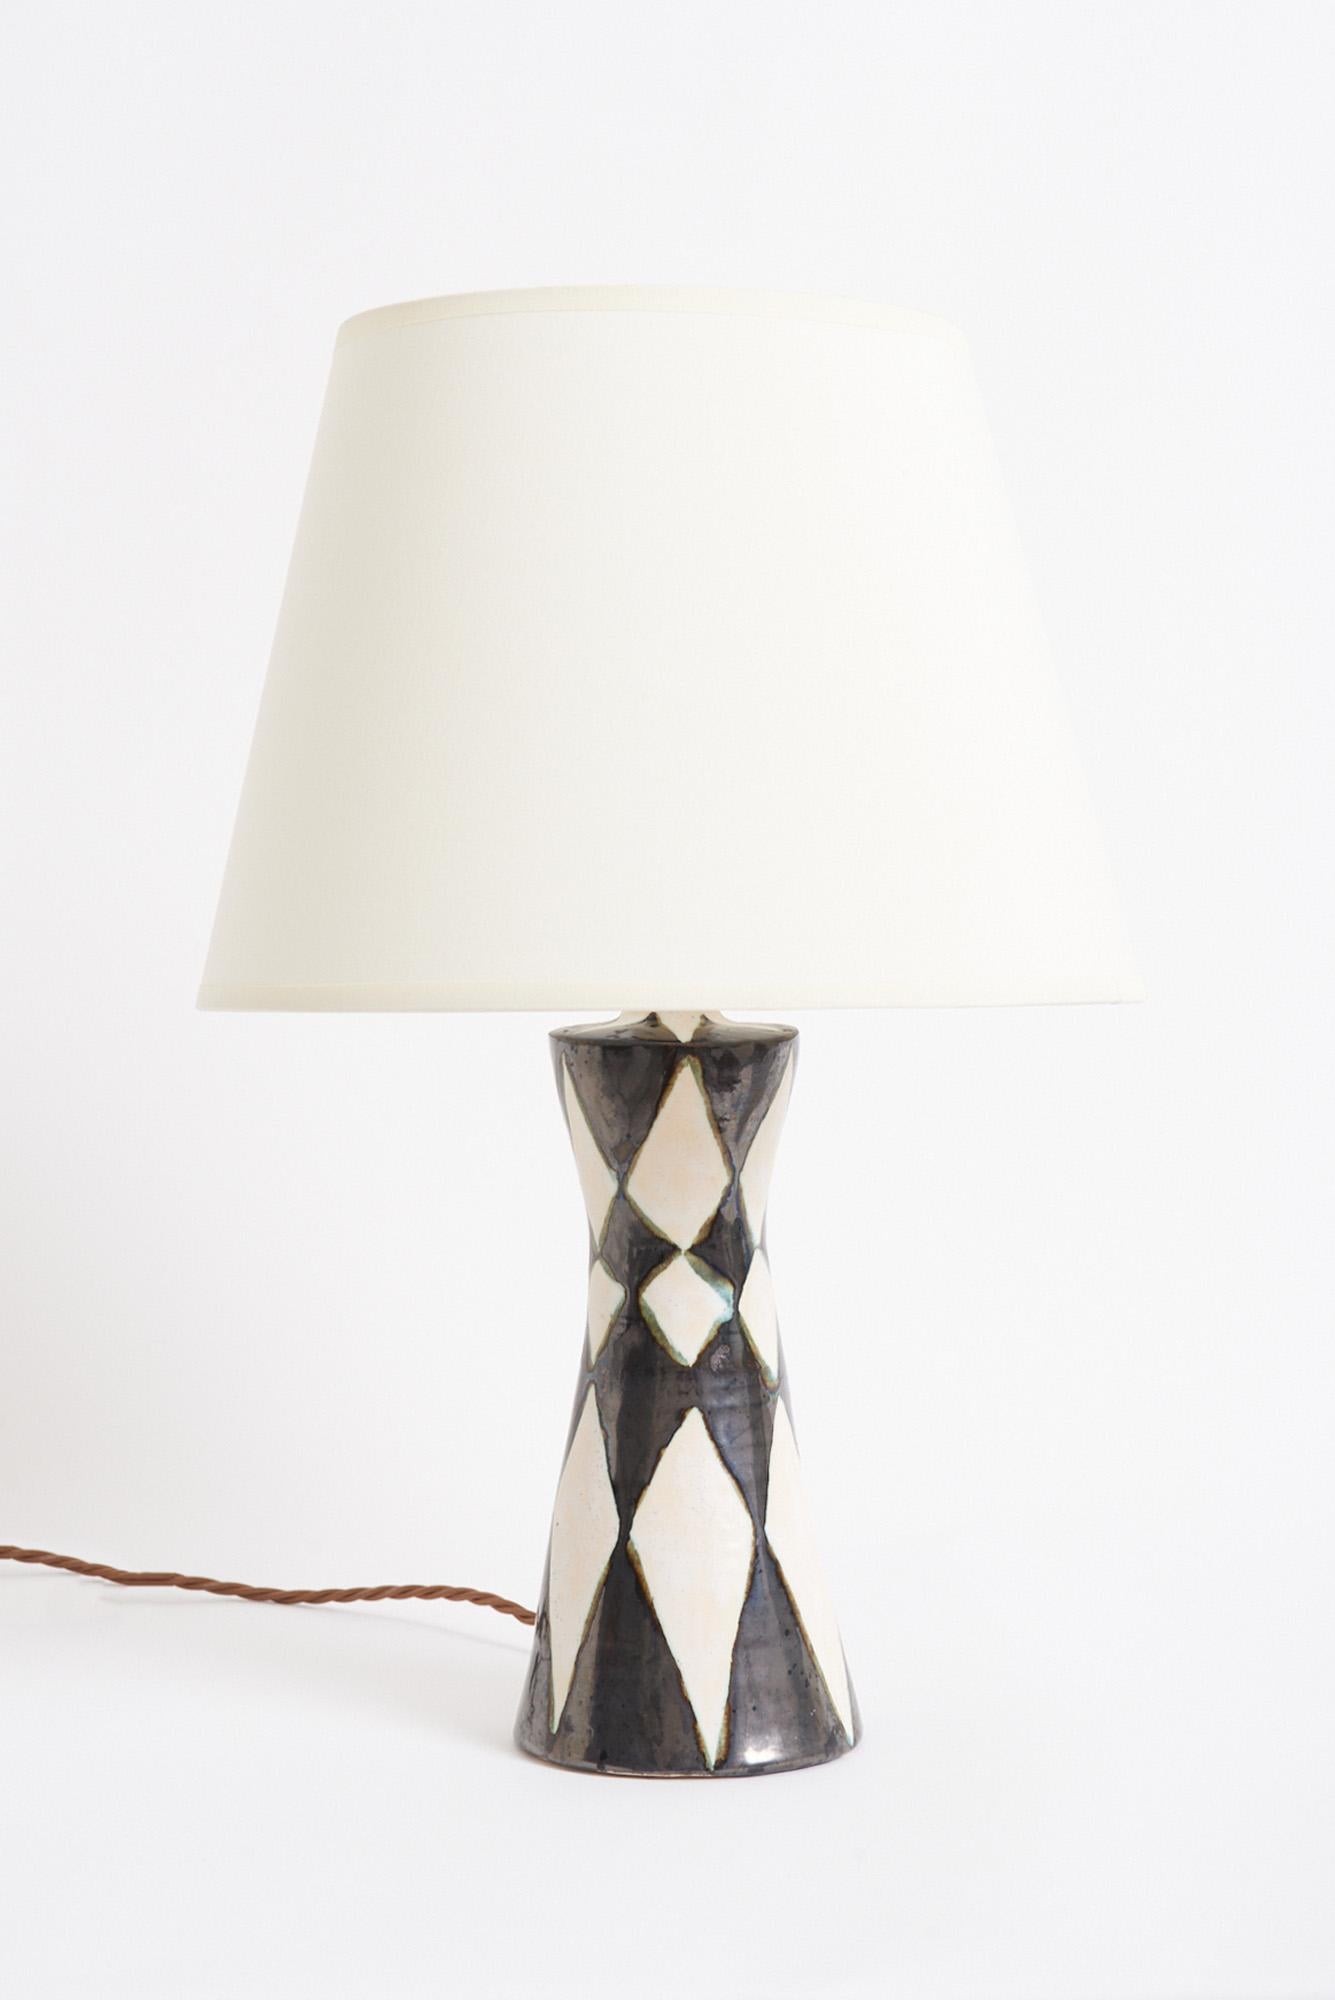 Lampe de table en céramique Harlequin
France, milieu du 20e siècle
Avec l'abat-jour : 44,5 cm de haut par 30,5 cm de diamètre
Base de la lampe uniquement : 29 cm de haut par 9 cm de diamètre